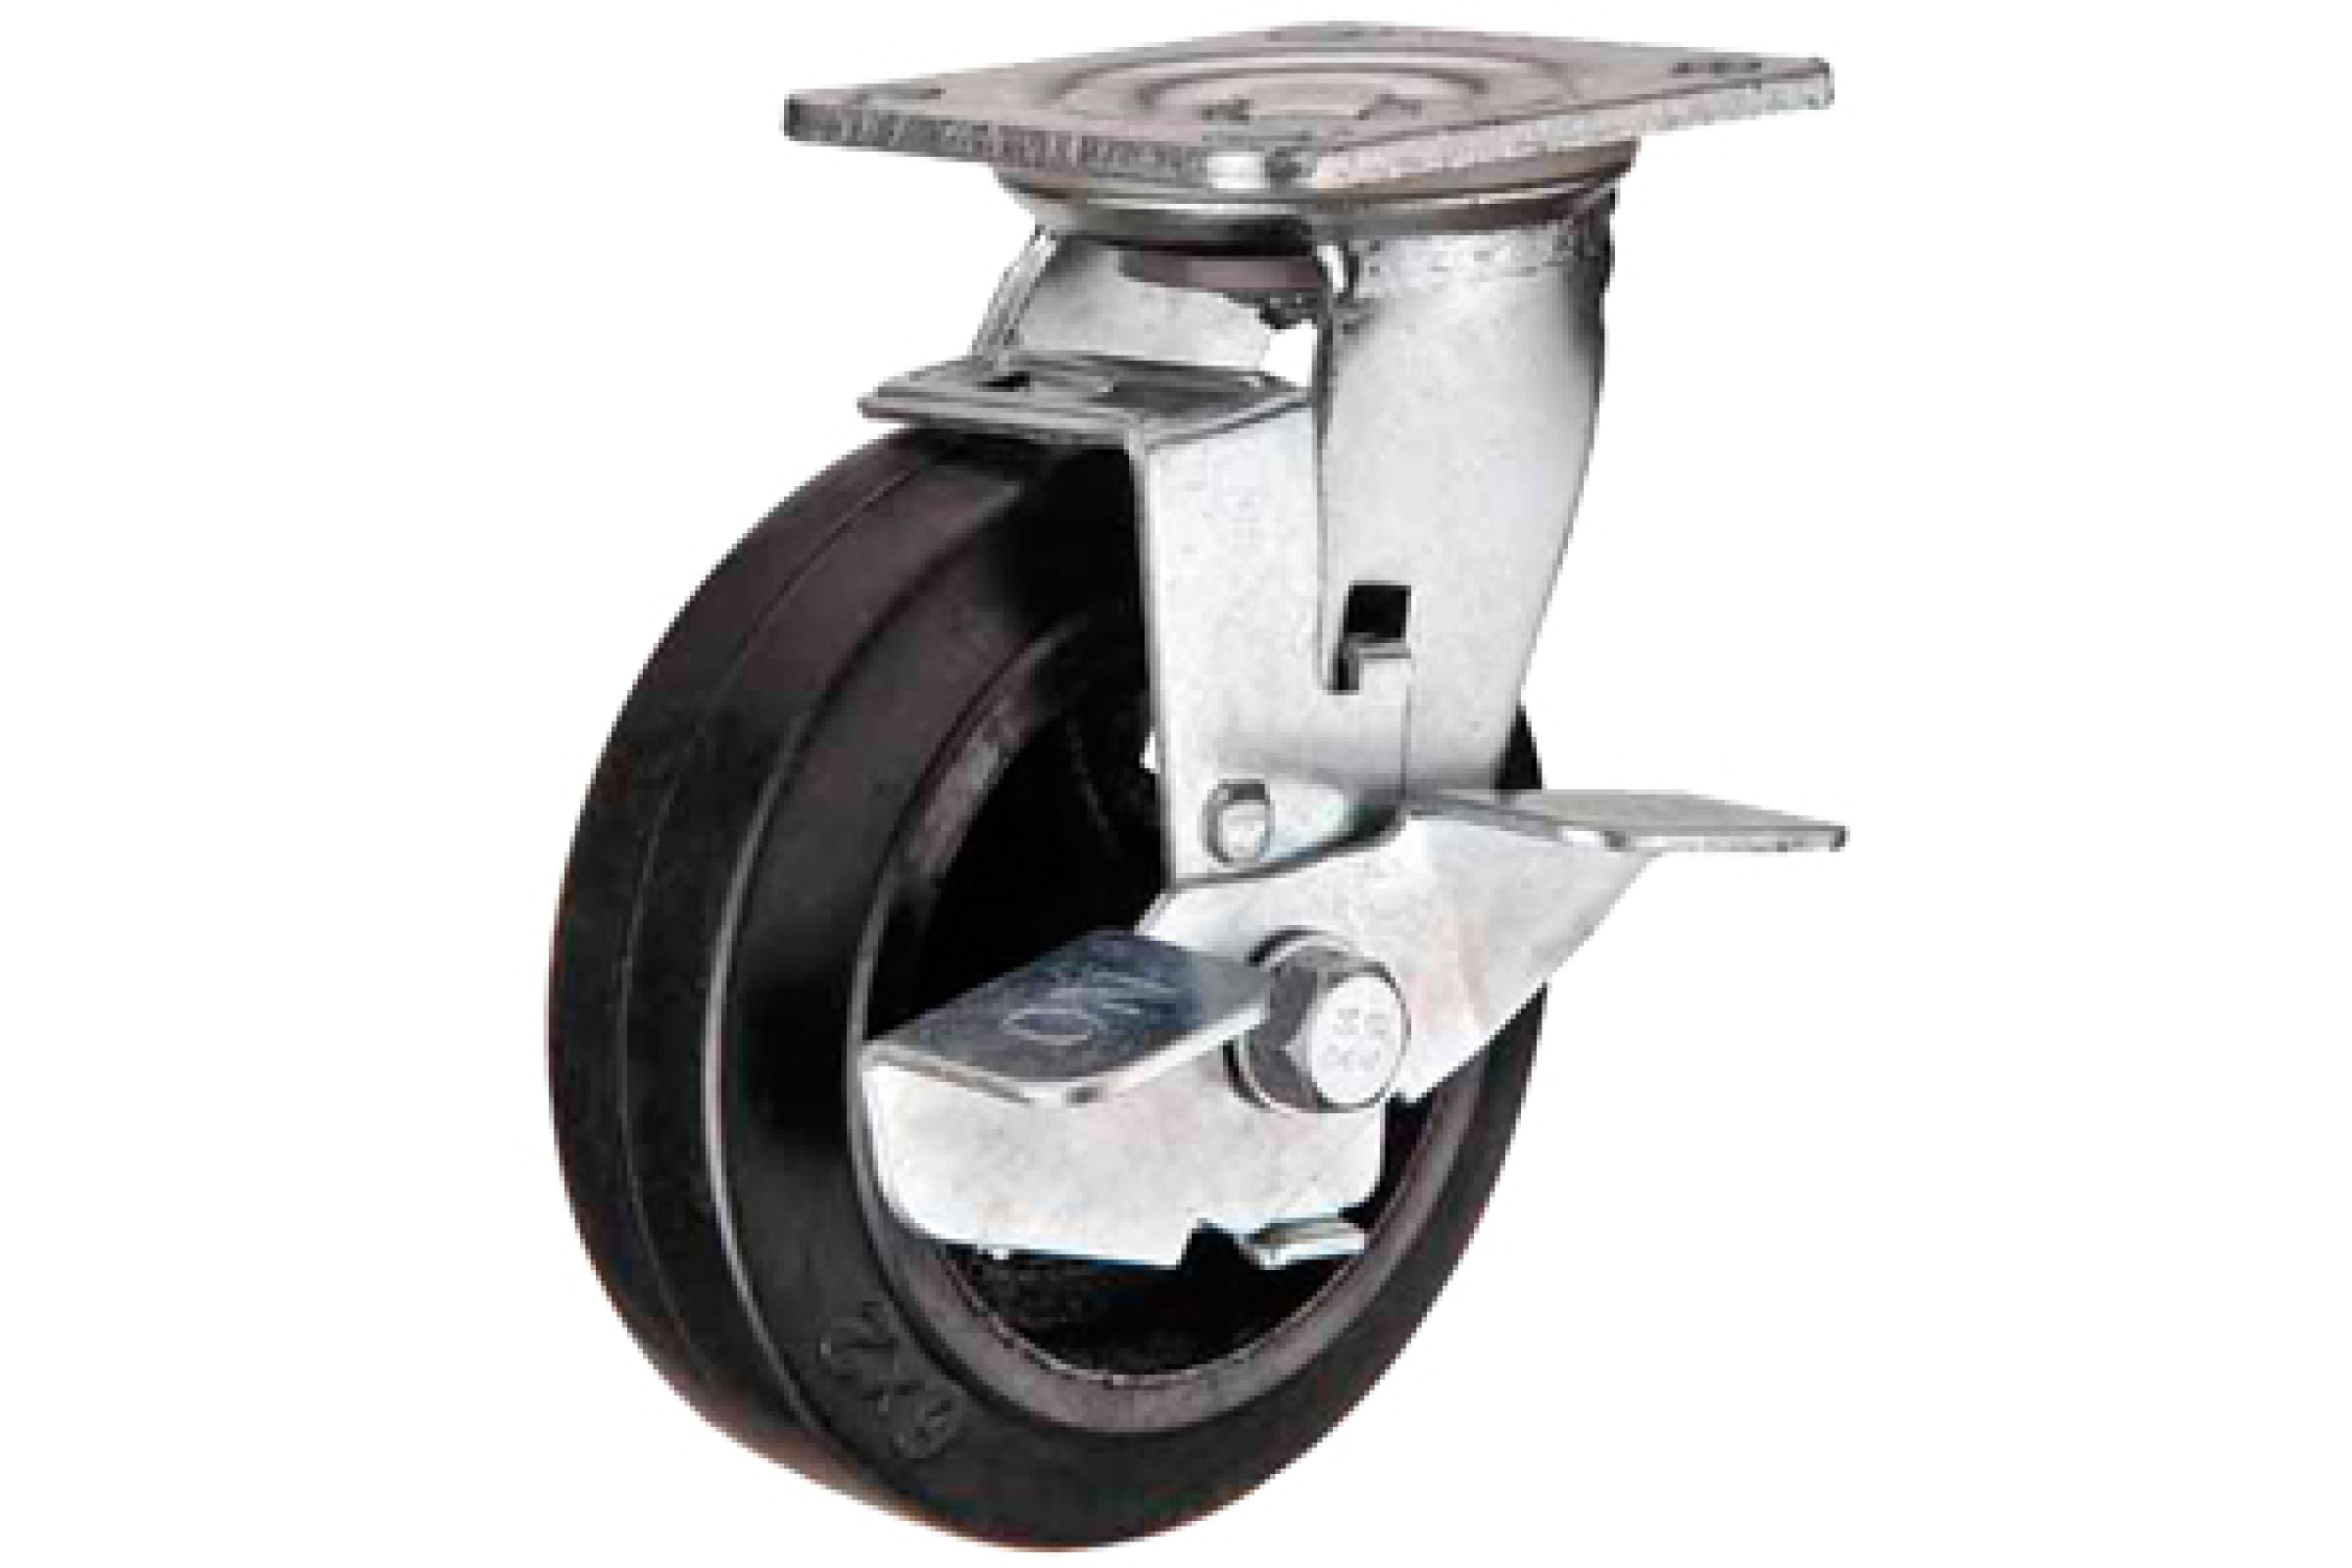 А5 Большегрузное чугунное колесо, 100мм - SCDB 42 1000097 большегрузное чугунное колесо поворот с панелью и тормоз scdb 42 100 мм 130 кг а5